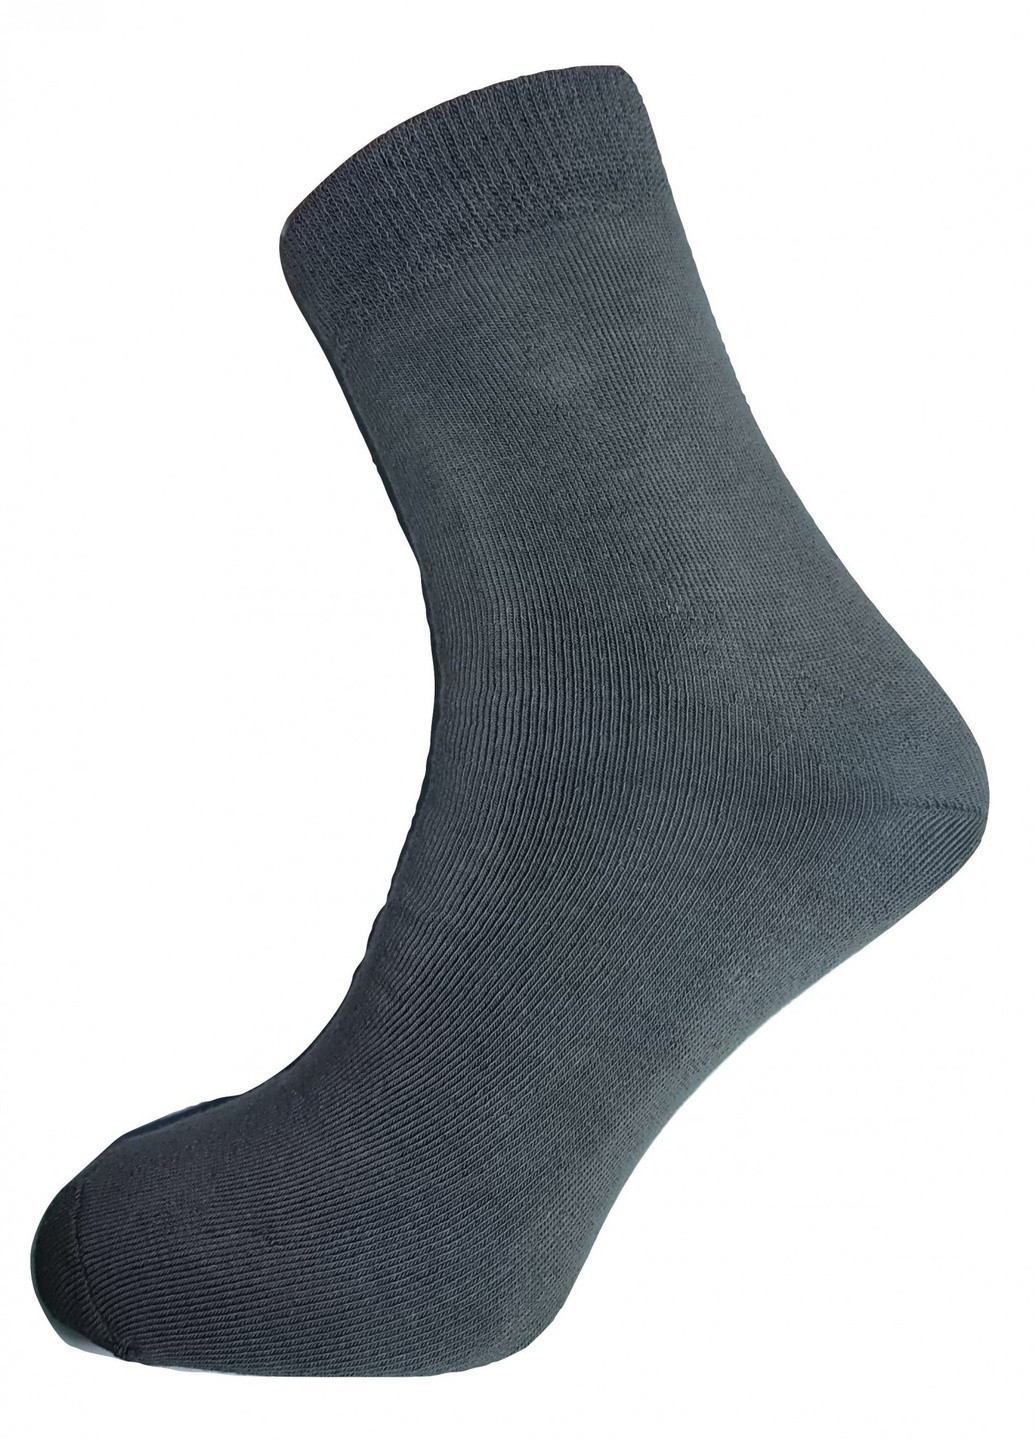 Шкарпетки чоловічі ТМ "Нова пара" плюш 440 НОВА ПАРА середня висота (257108286)